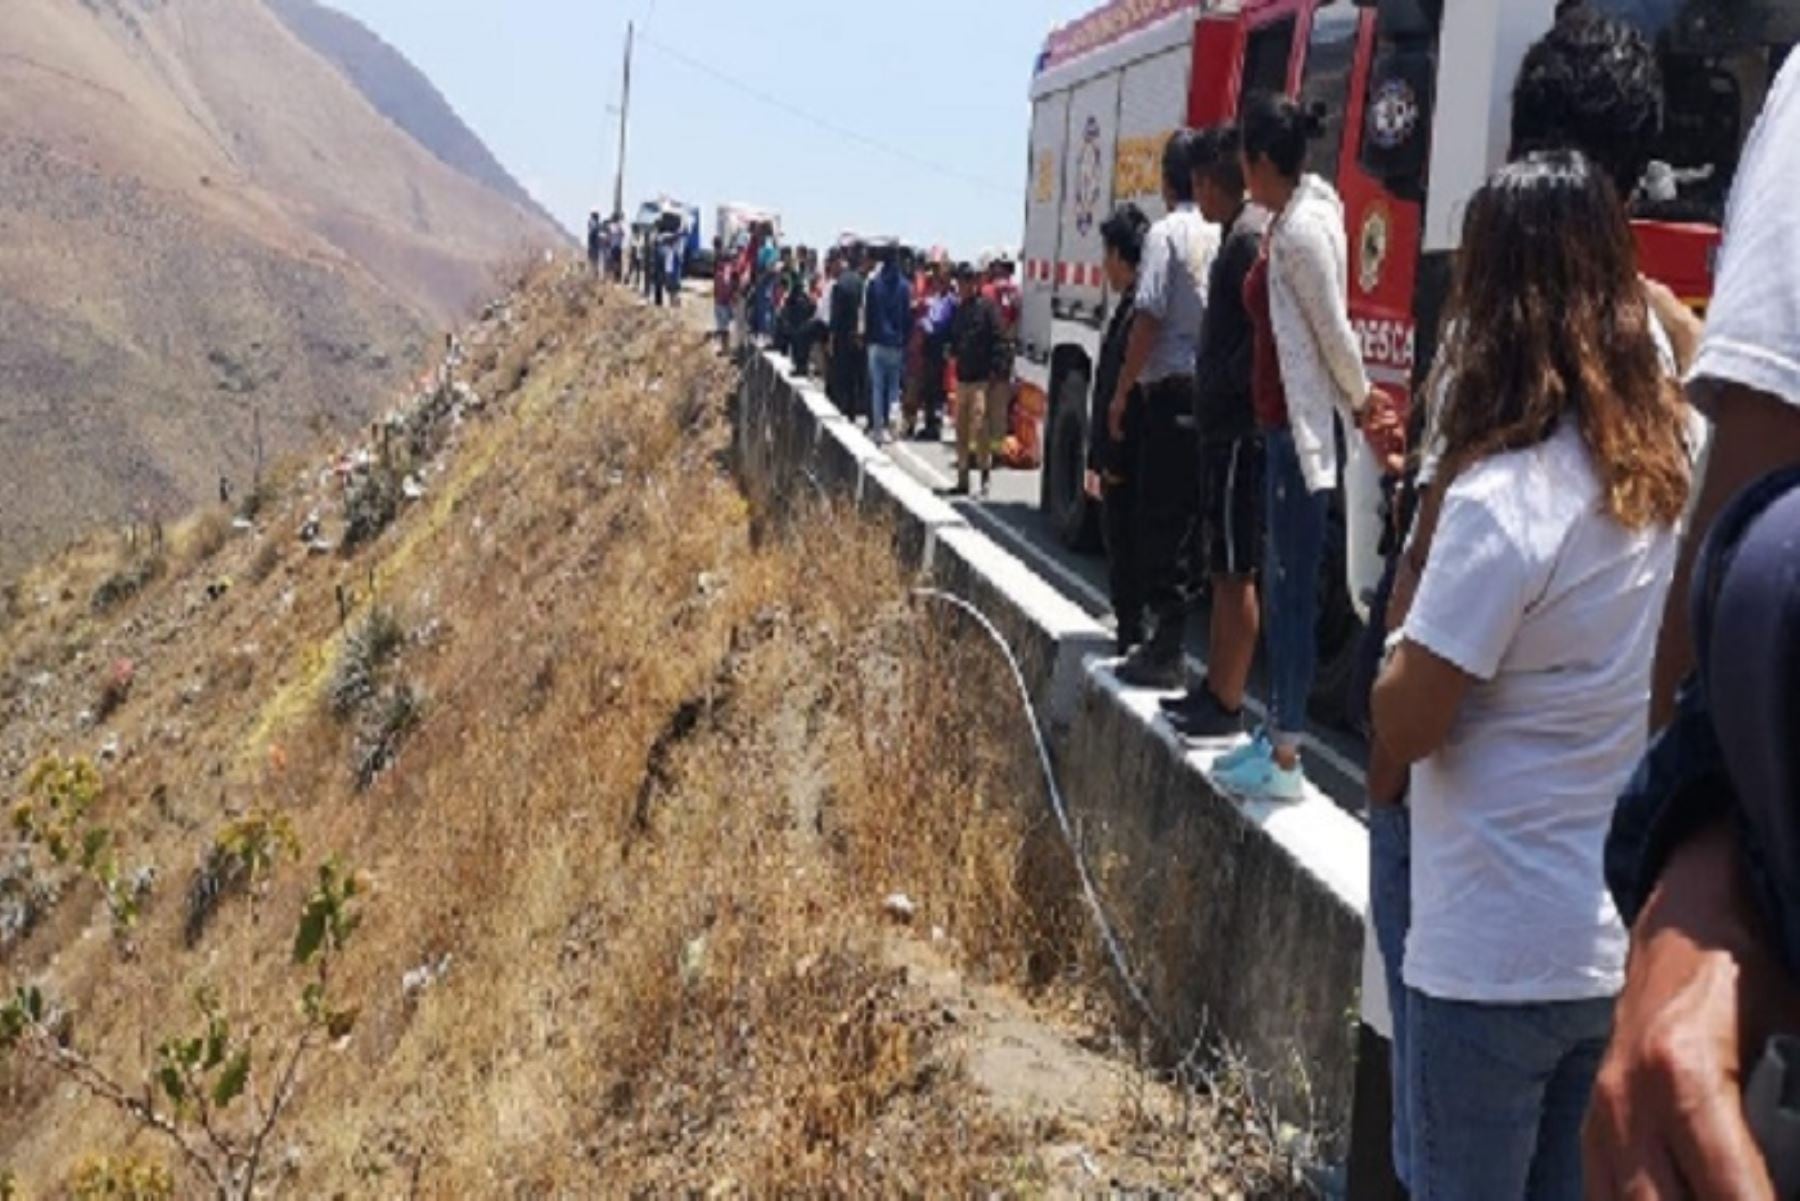 El accidente ocurrió al promediar las 11:25 a.m. despistándose al abismo de 500 metros de profundidad. (Andina)